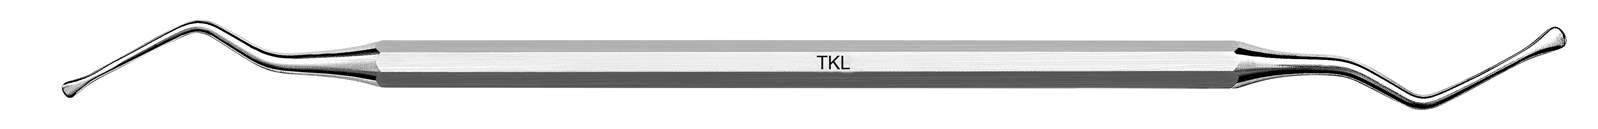 Nůž pro tunelovou techniku - TKL, ADEP tmavě zelený